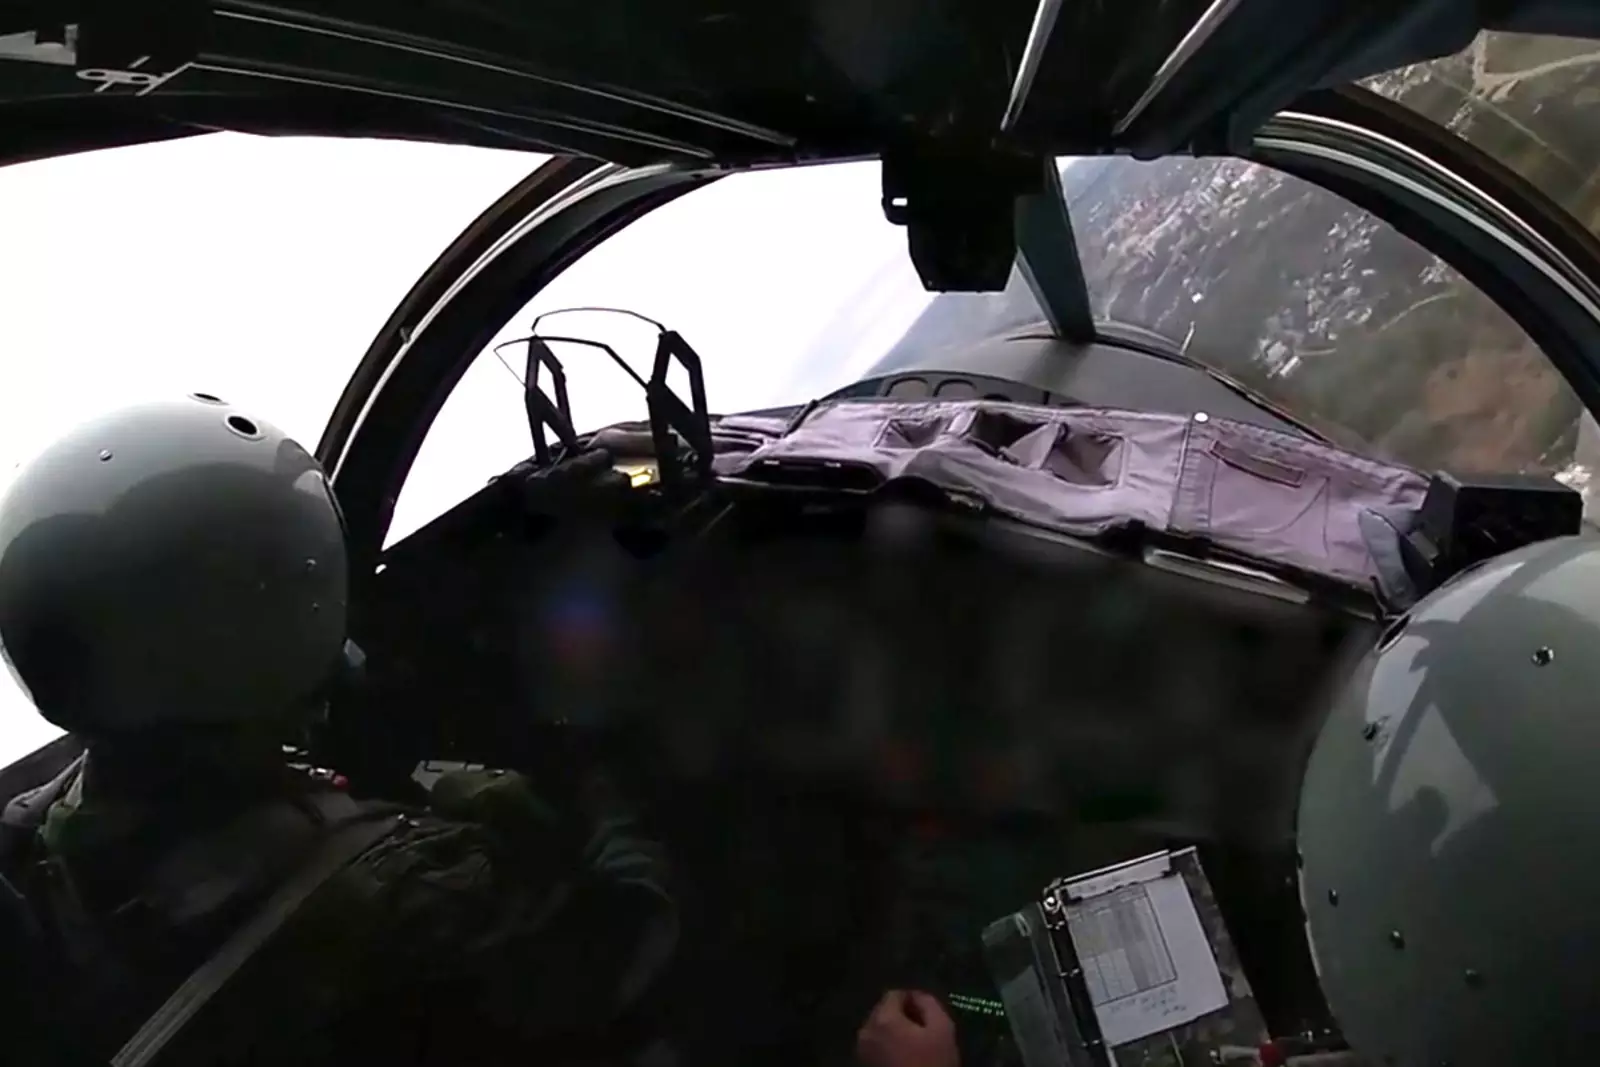 Операция вкс украина. Су 34 из кабины. Су-34 кабина пилота. Кабина истребителя-бомбардировщика РФ Су-34. Летчики в кабине Су-34.